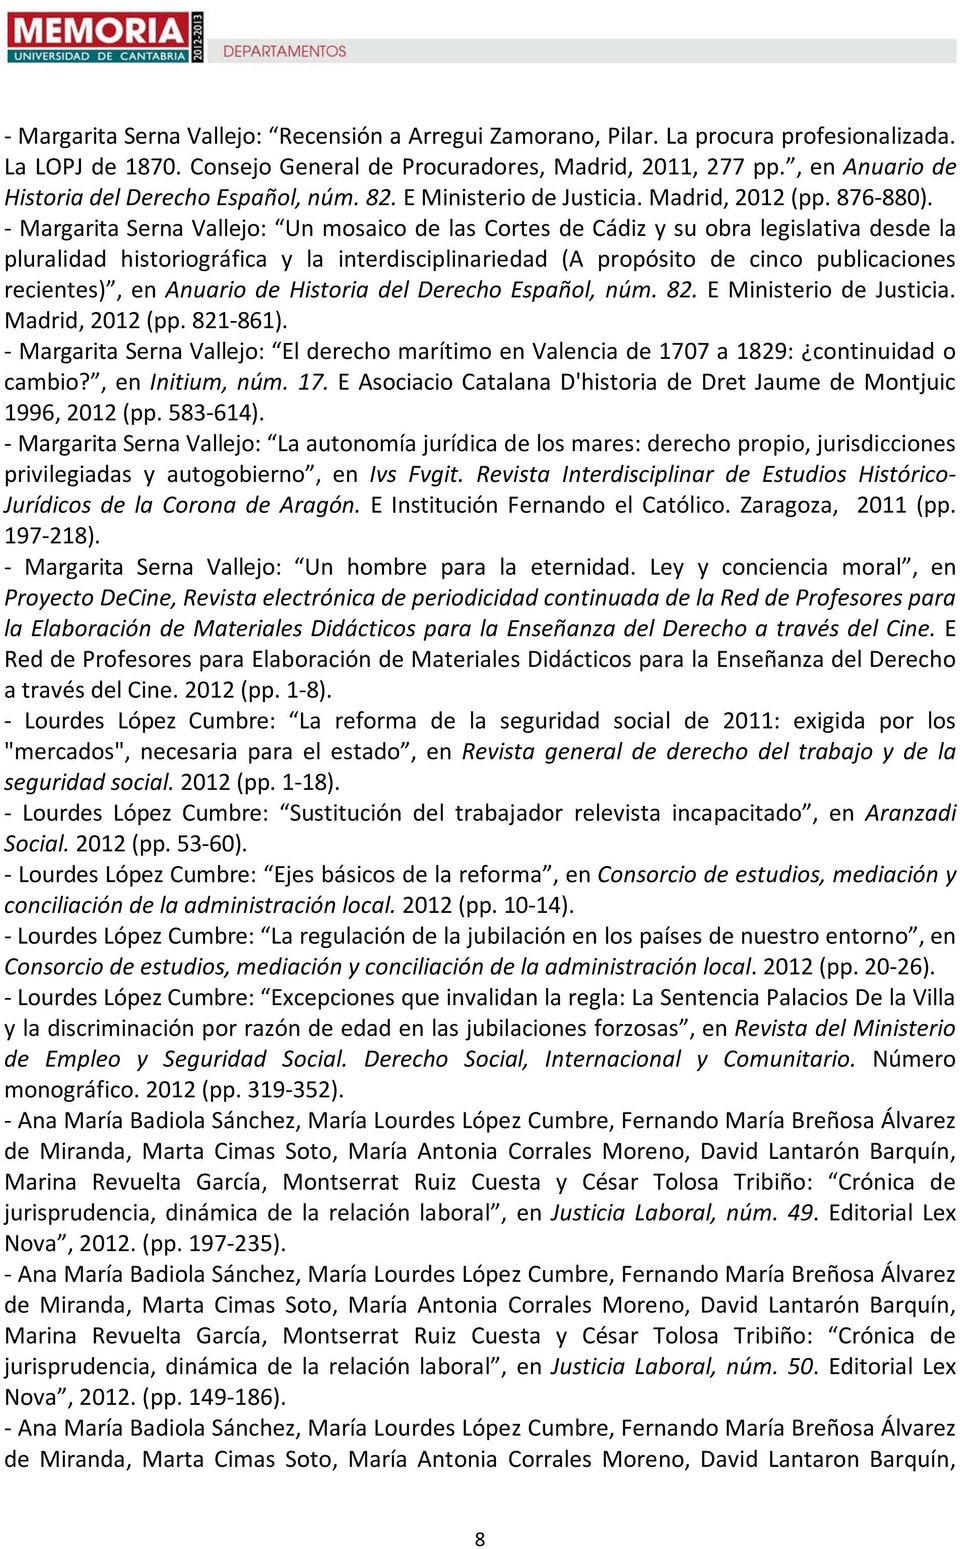 Margarita Serna Vallejo: Un mosaico de las Cortes de Cádiz y su obra legislativa desde la pluralidad historiográfica y la interdisciplinariedad (A propósito de cinco publicaciones recientes), en